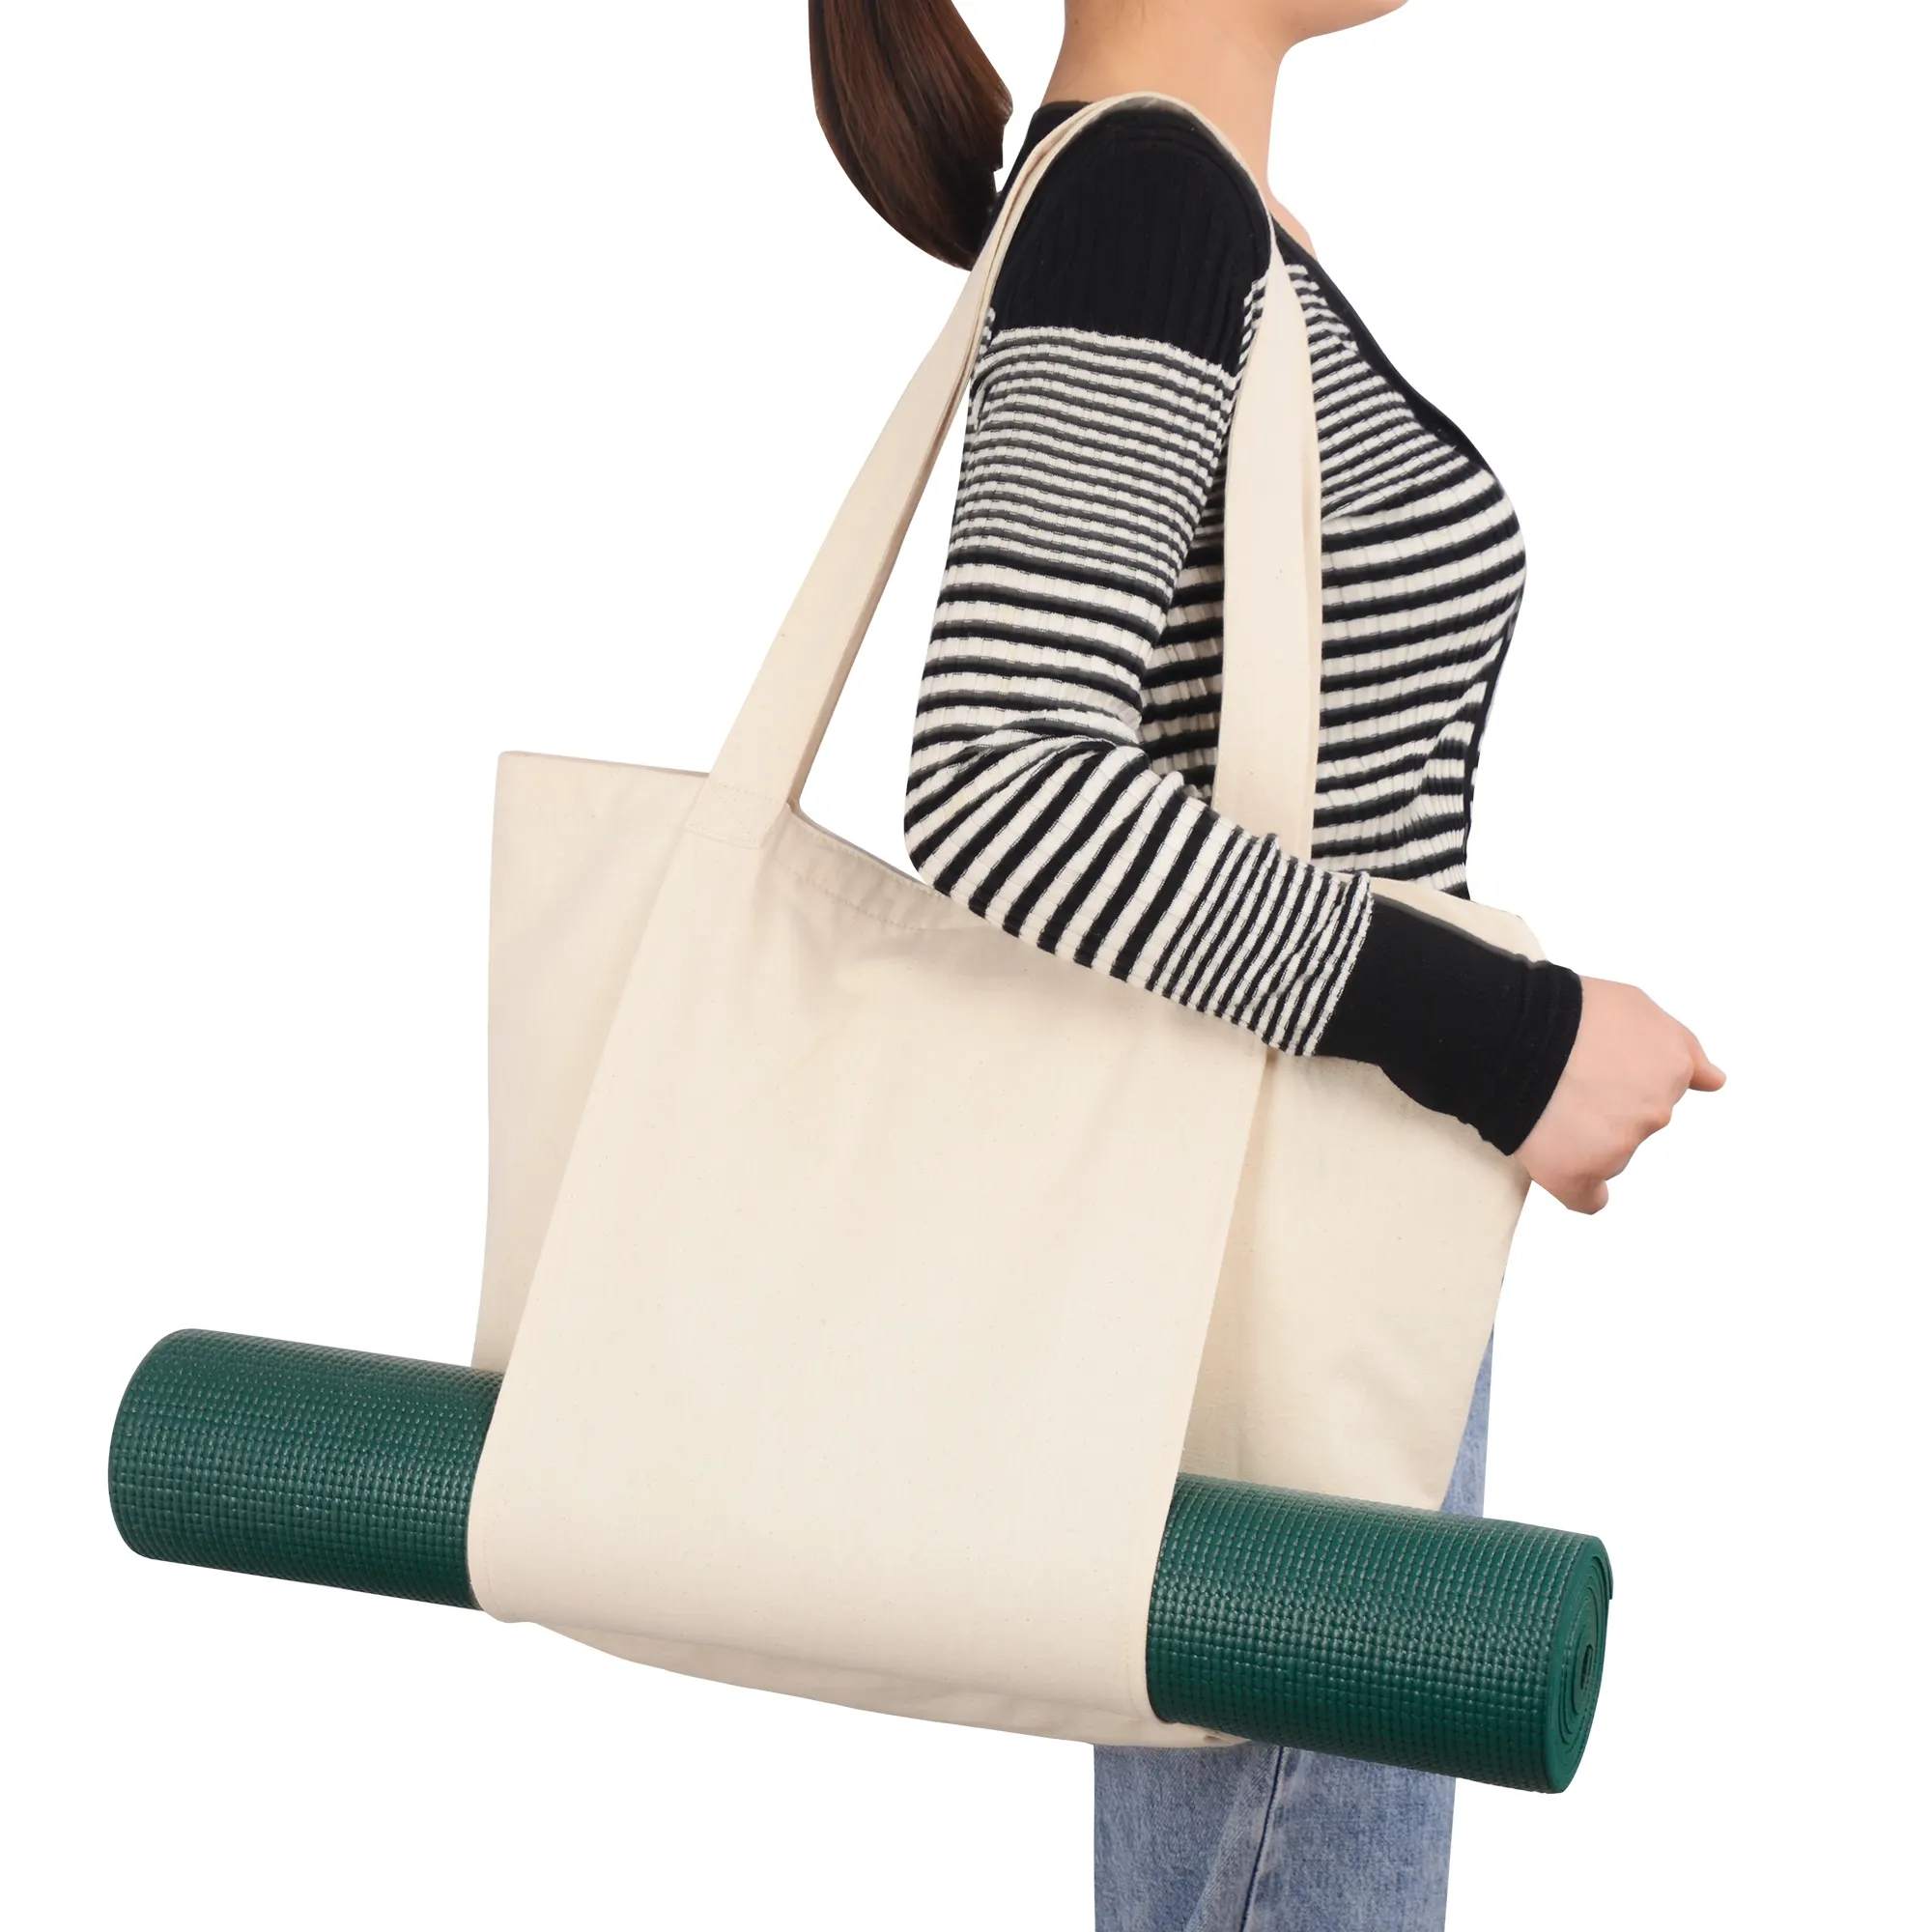 กระเป๋าและเป้ใส่เสื่อโยคะขนาดใหญ่,กระเป๋าโท้ทผ้าใบผ้าฝ้ายสำหรับเล่นโยคะฟิตเนสอุปกรณ์เสริมทั้งหมดของคุณ